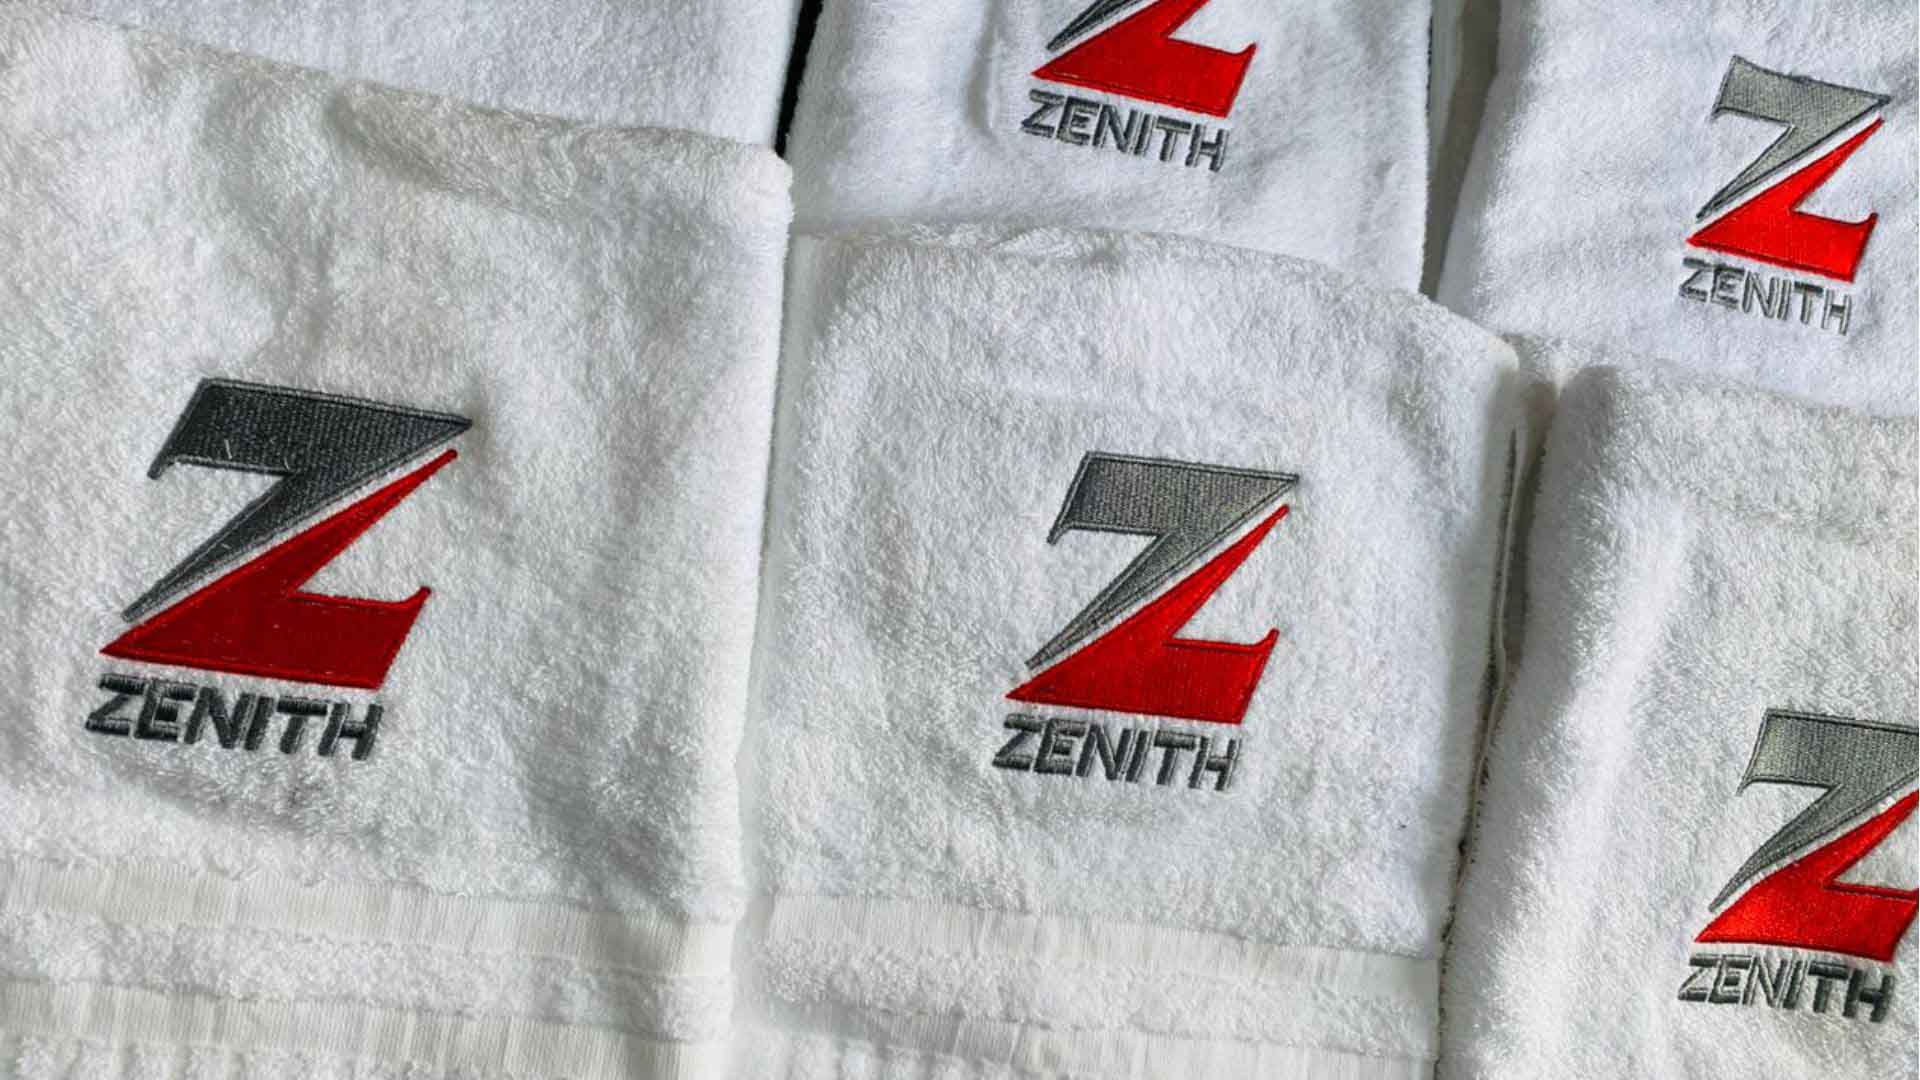 Monogram Towel Design and Print in Lagos Nigeria